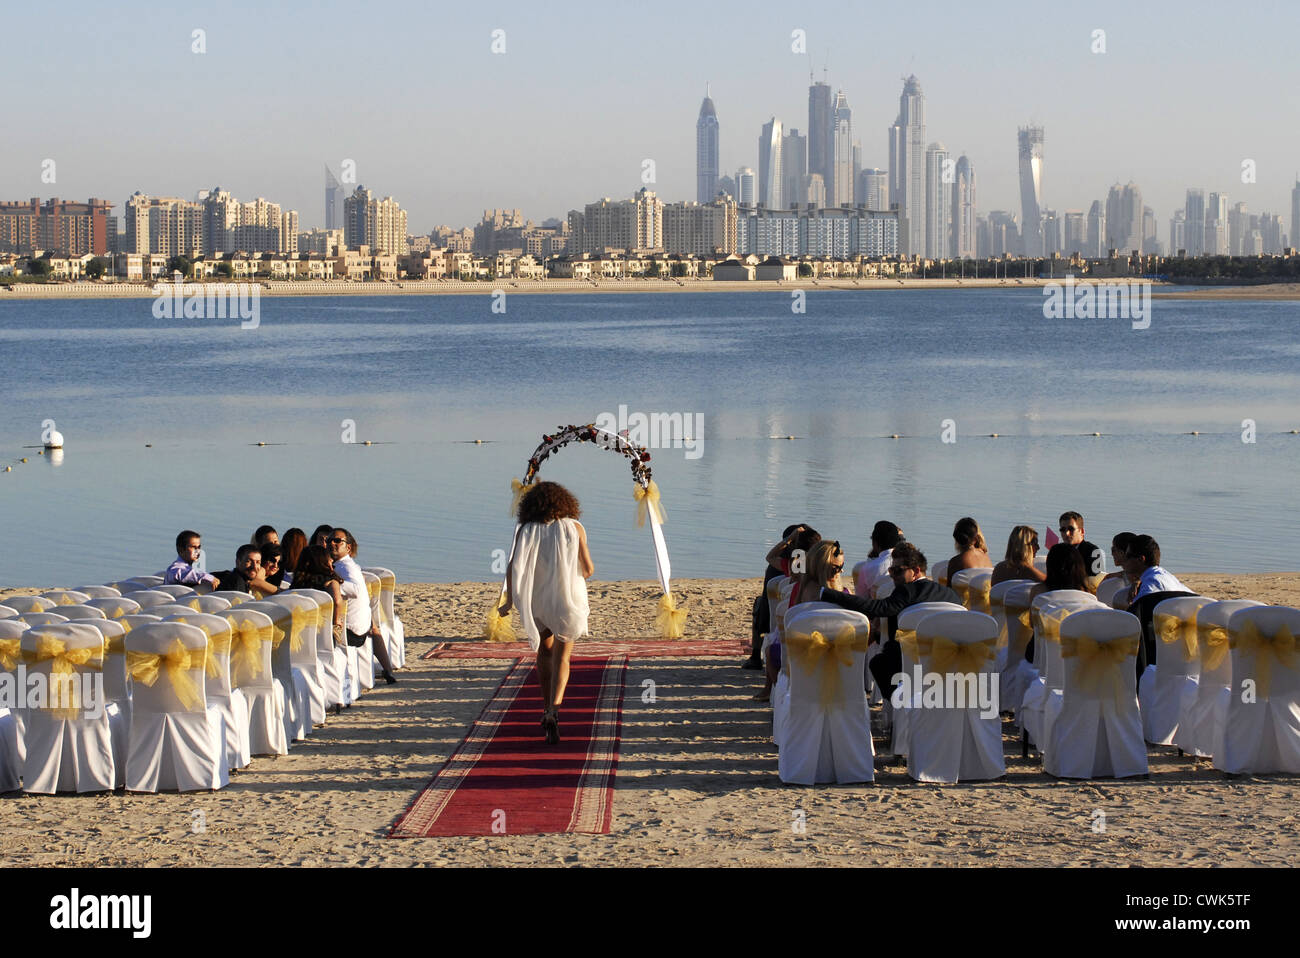 Mariage, marié, mariée, dans l'Hôtel Atlantis, The Palm, DUBAÏ, ÉMIRATS ARABES UNIS, Émirats arabes unis, du golfe Persique, Péninsule Arabique, Asie. Banque D'Images